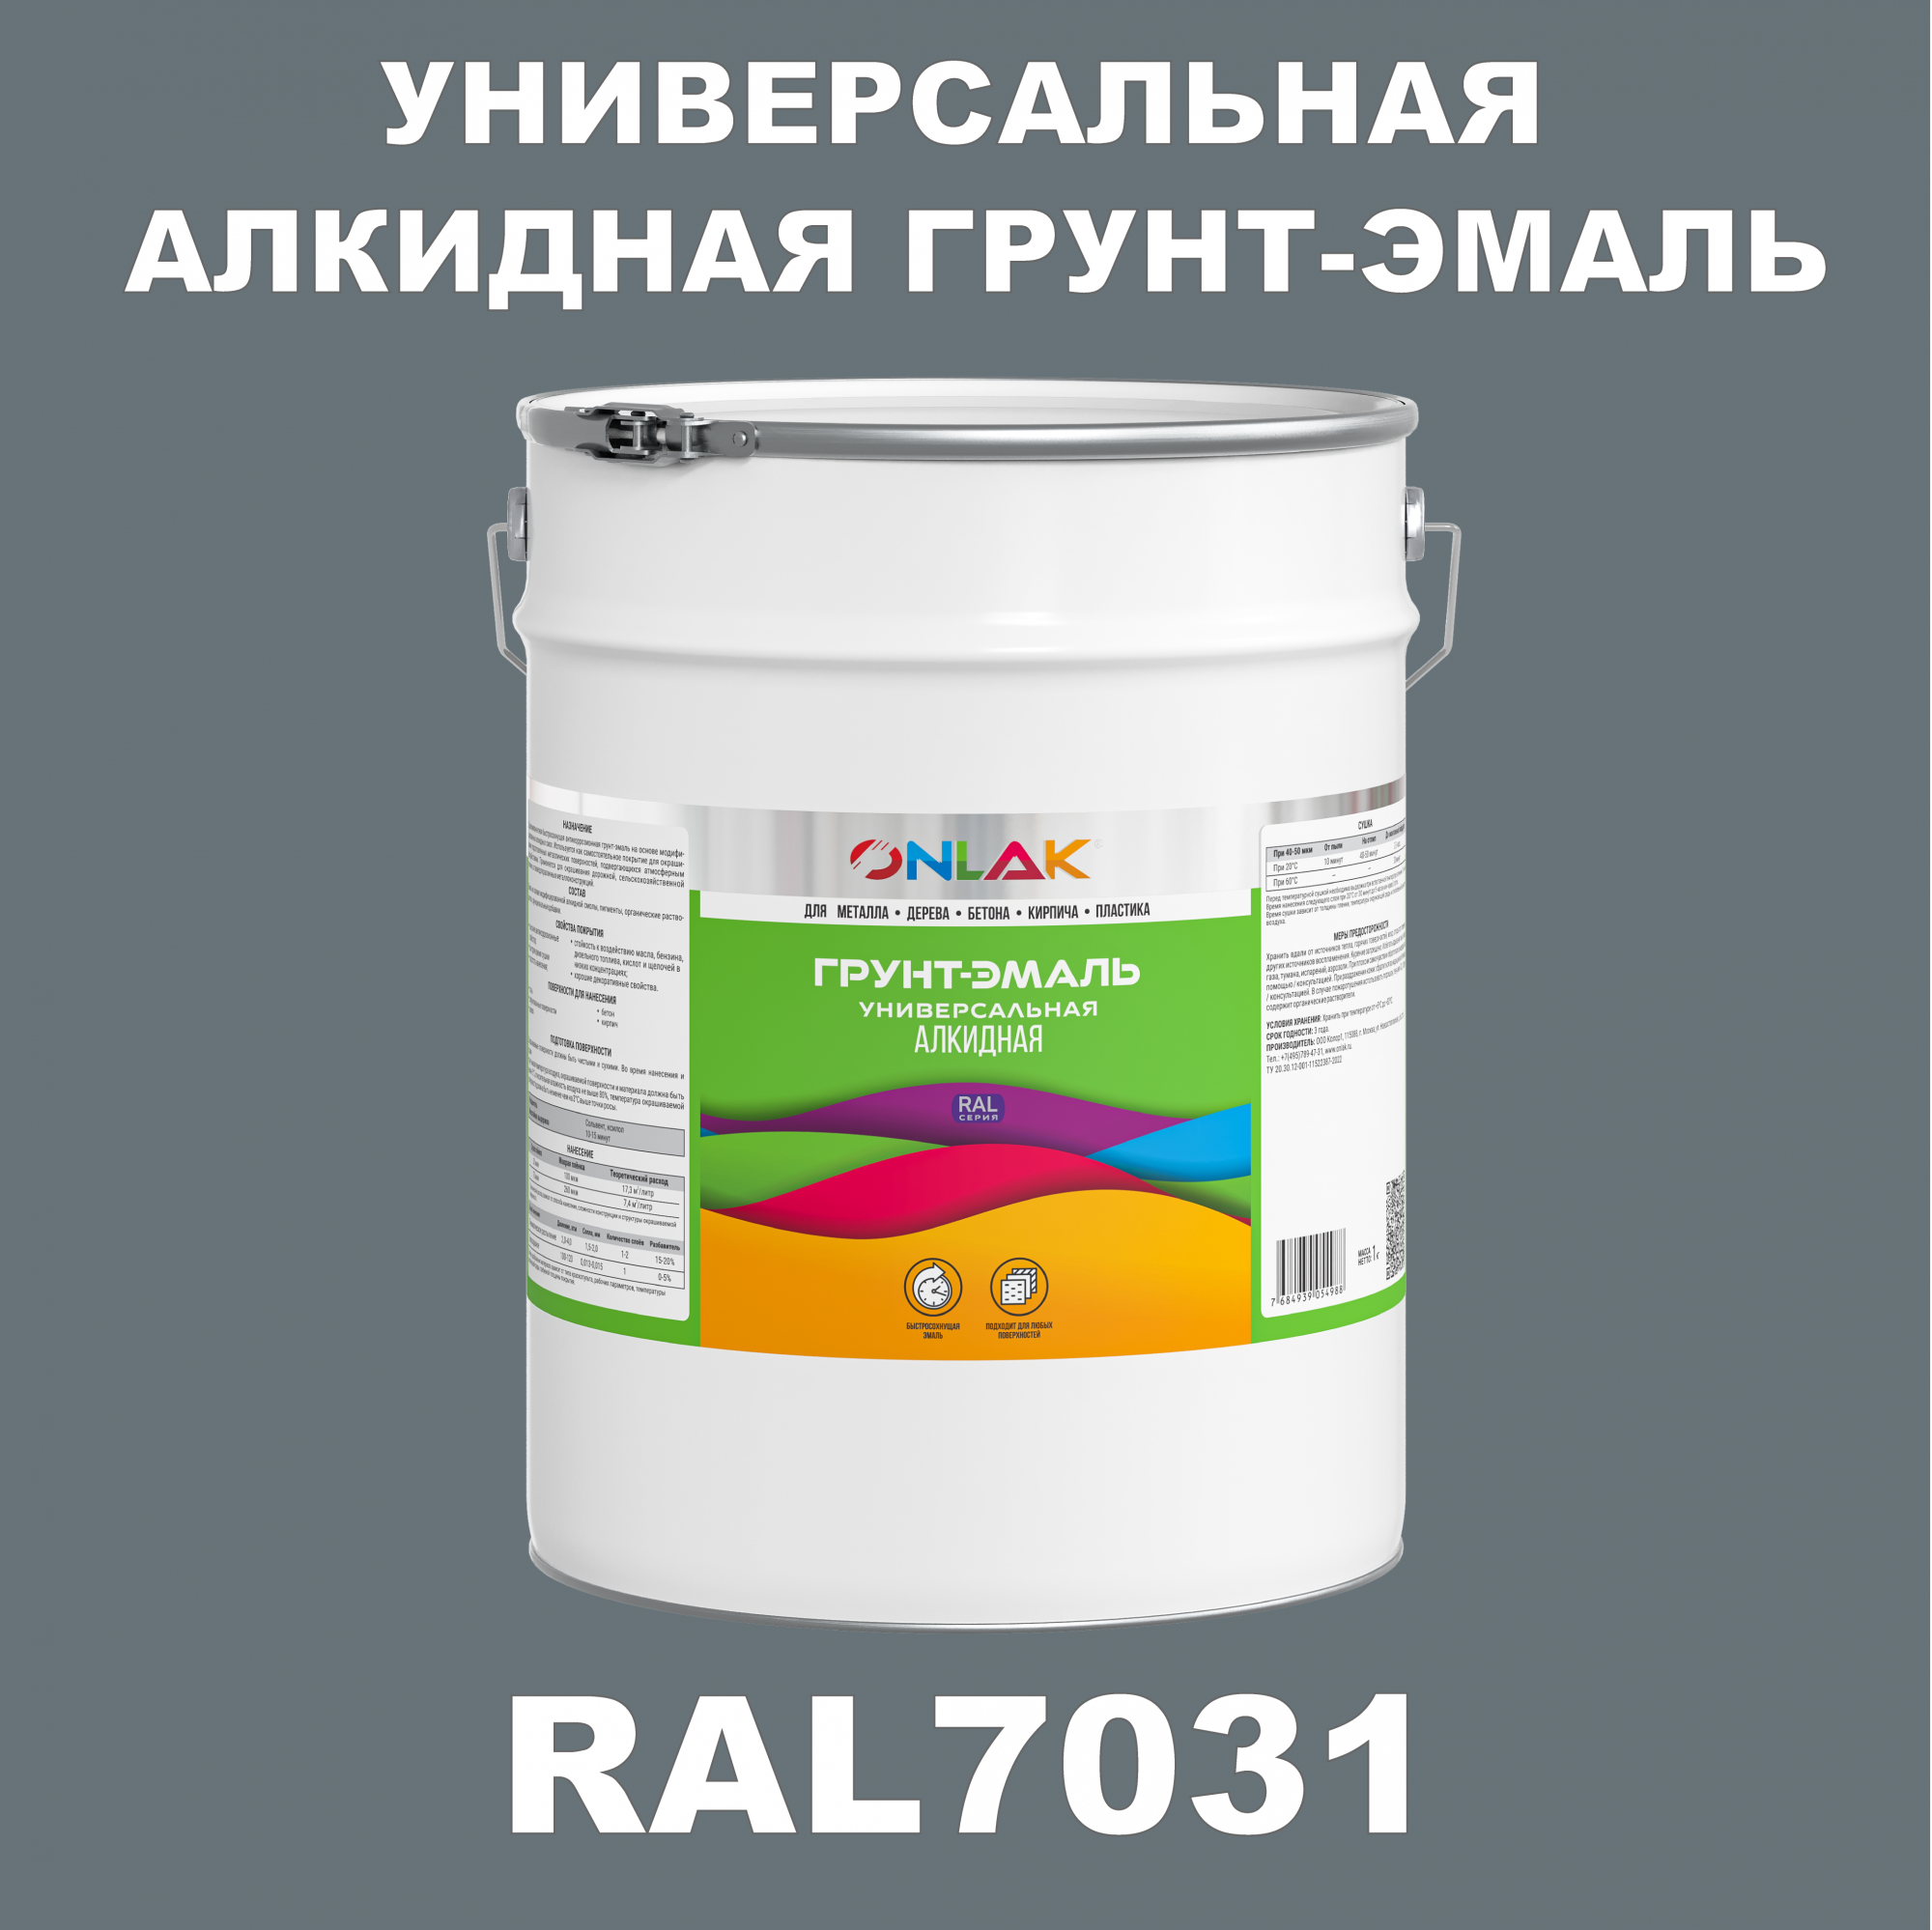 Грунт-эмаль ONLAK 1К RAL7031 антикоррозионная алкидная по металлу по ржавчине 20 кг грунт эмаль аэрозольная престиж 3в1 алкидная коричневая ral 8017 425 мл 0 425 кг